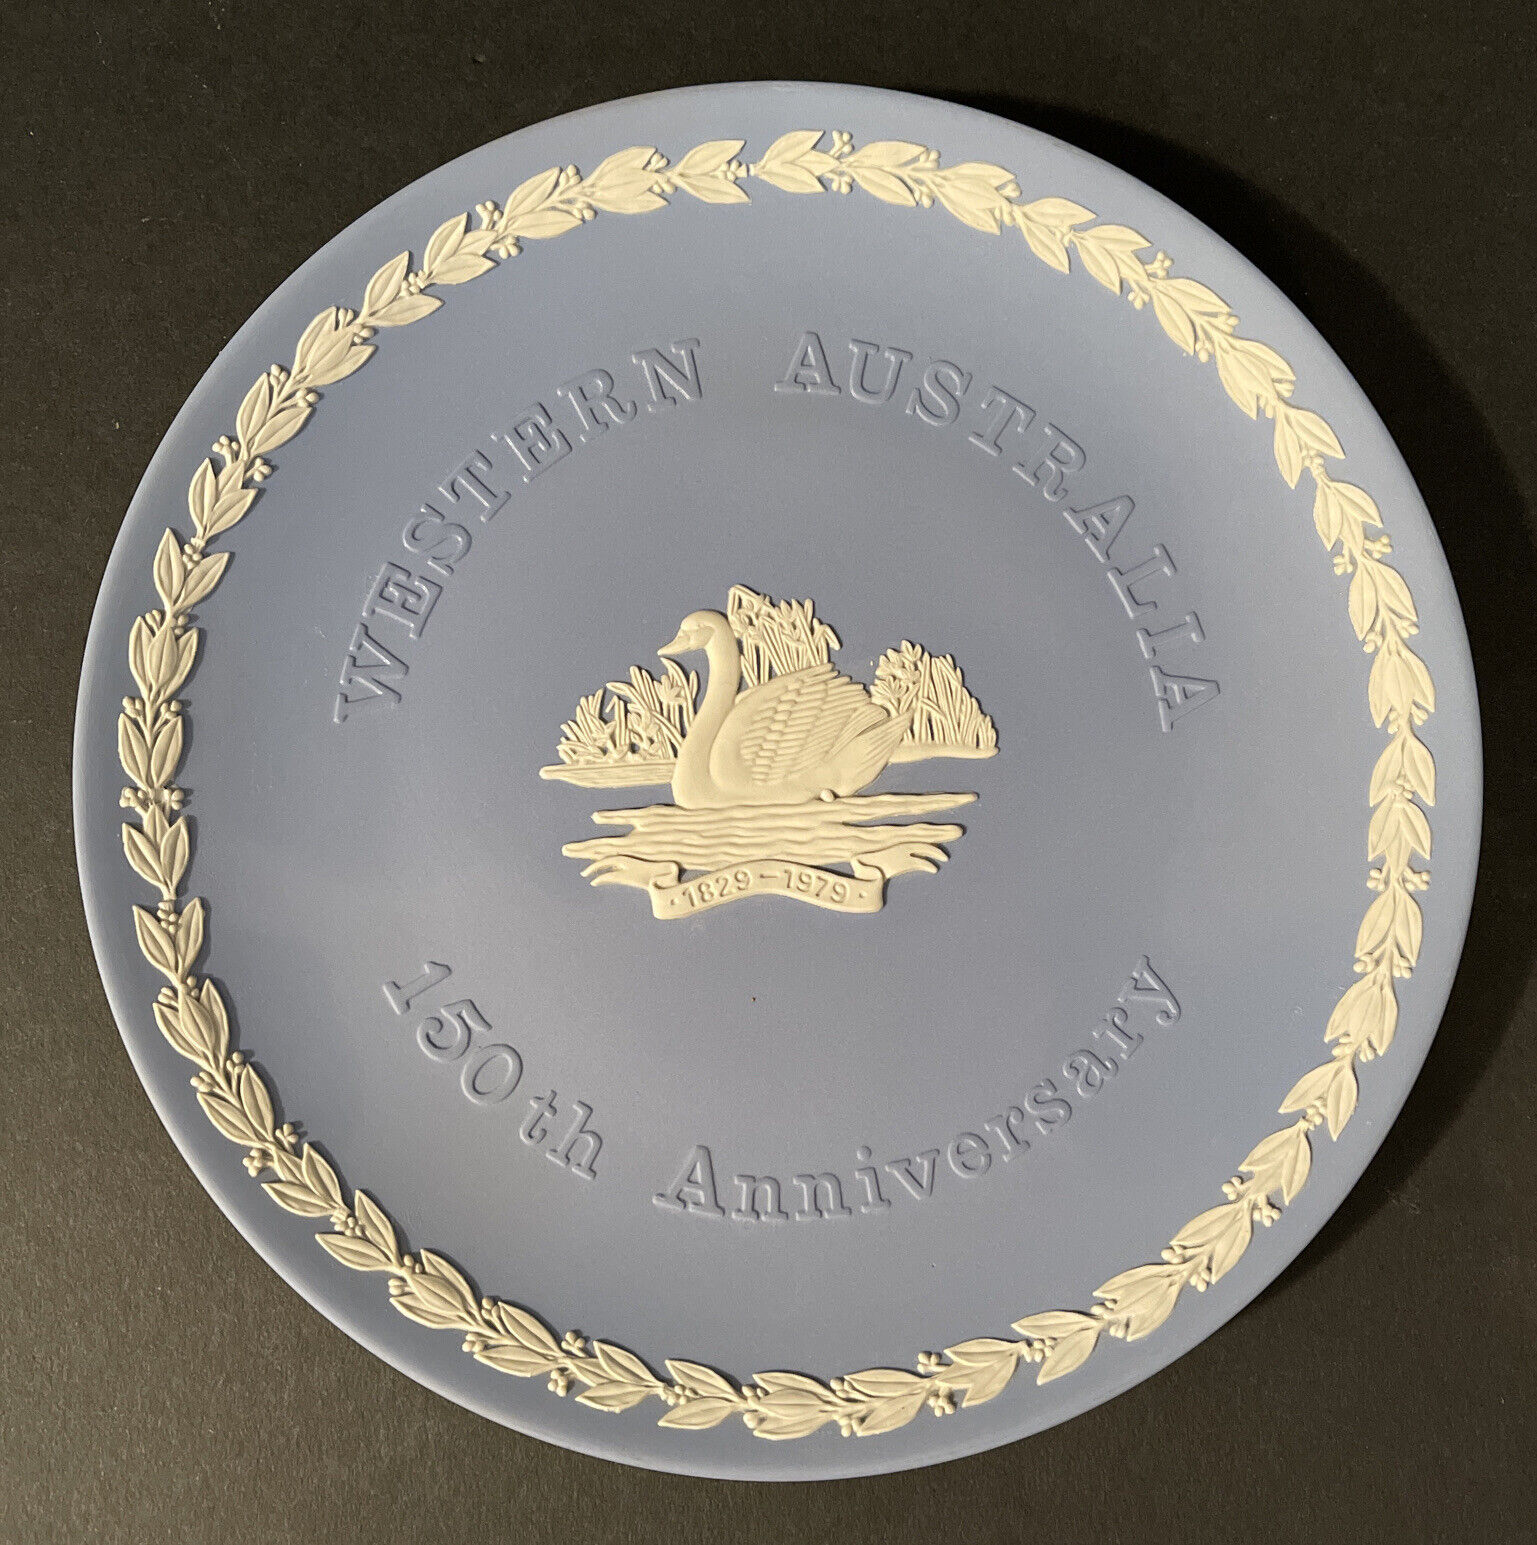 Wedgewood Jasperware Plate commemorating Western Australia 150th Anniversary 8" - $42.08